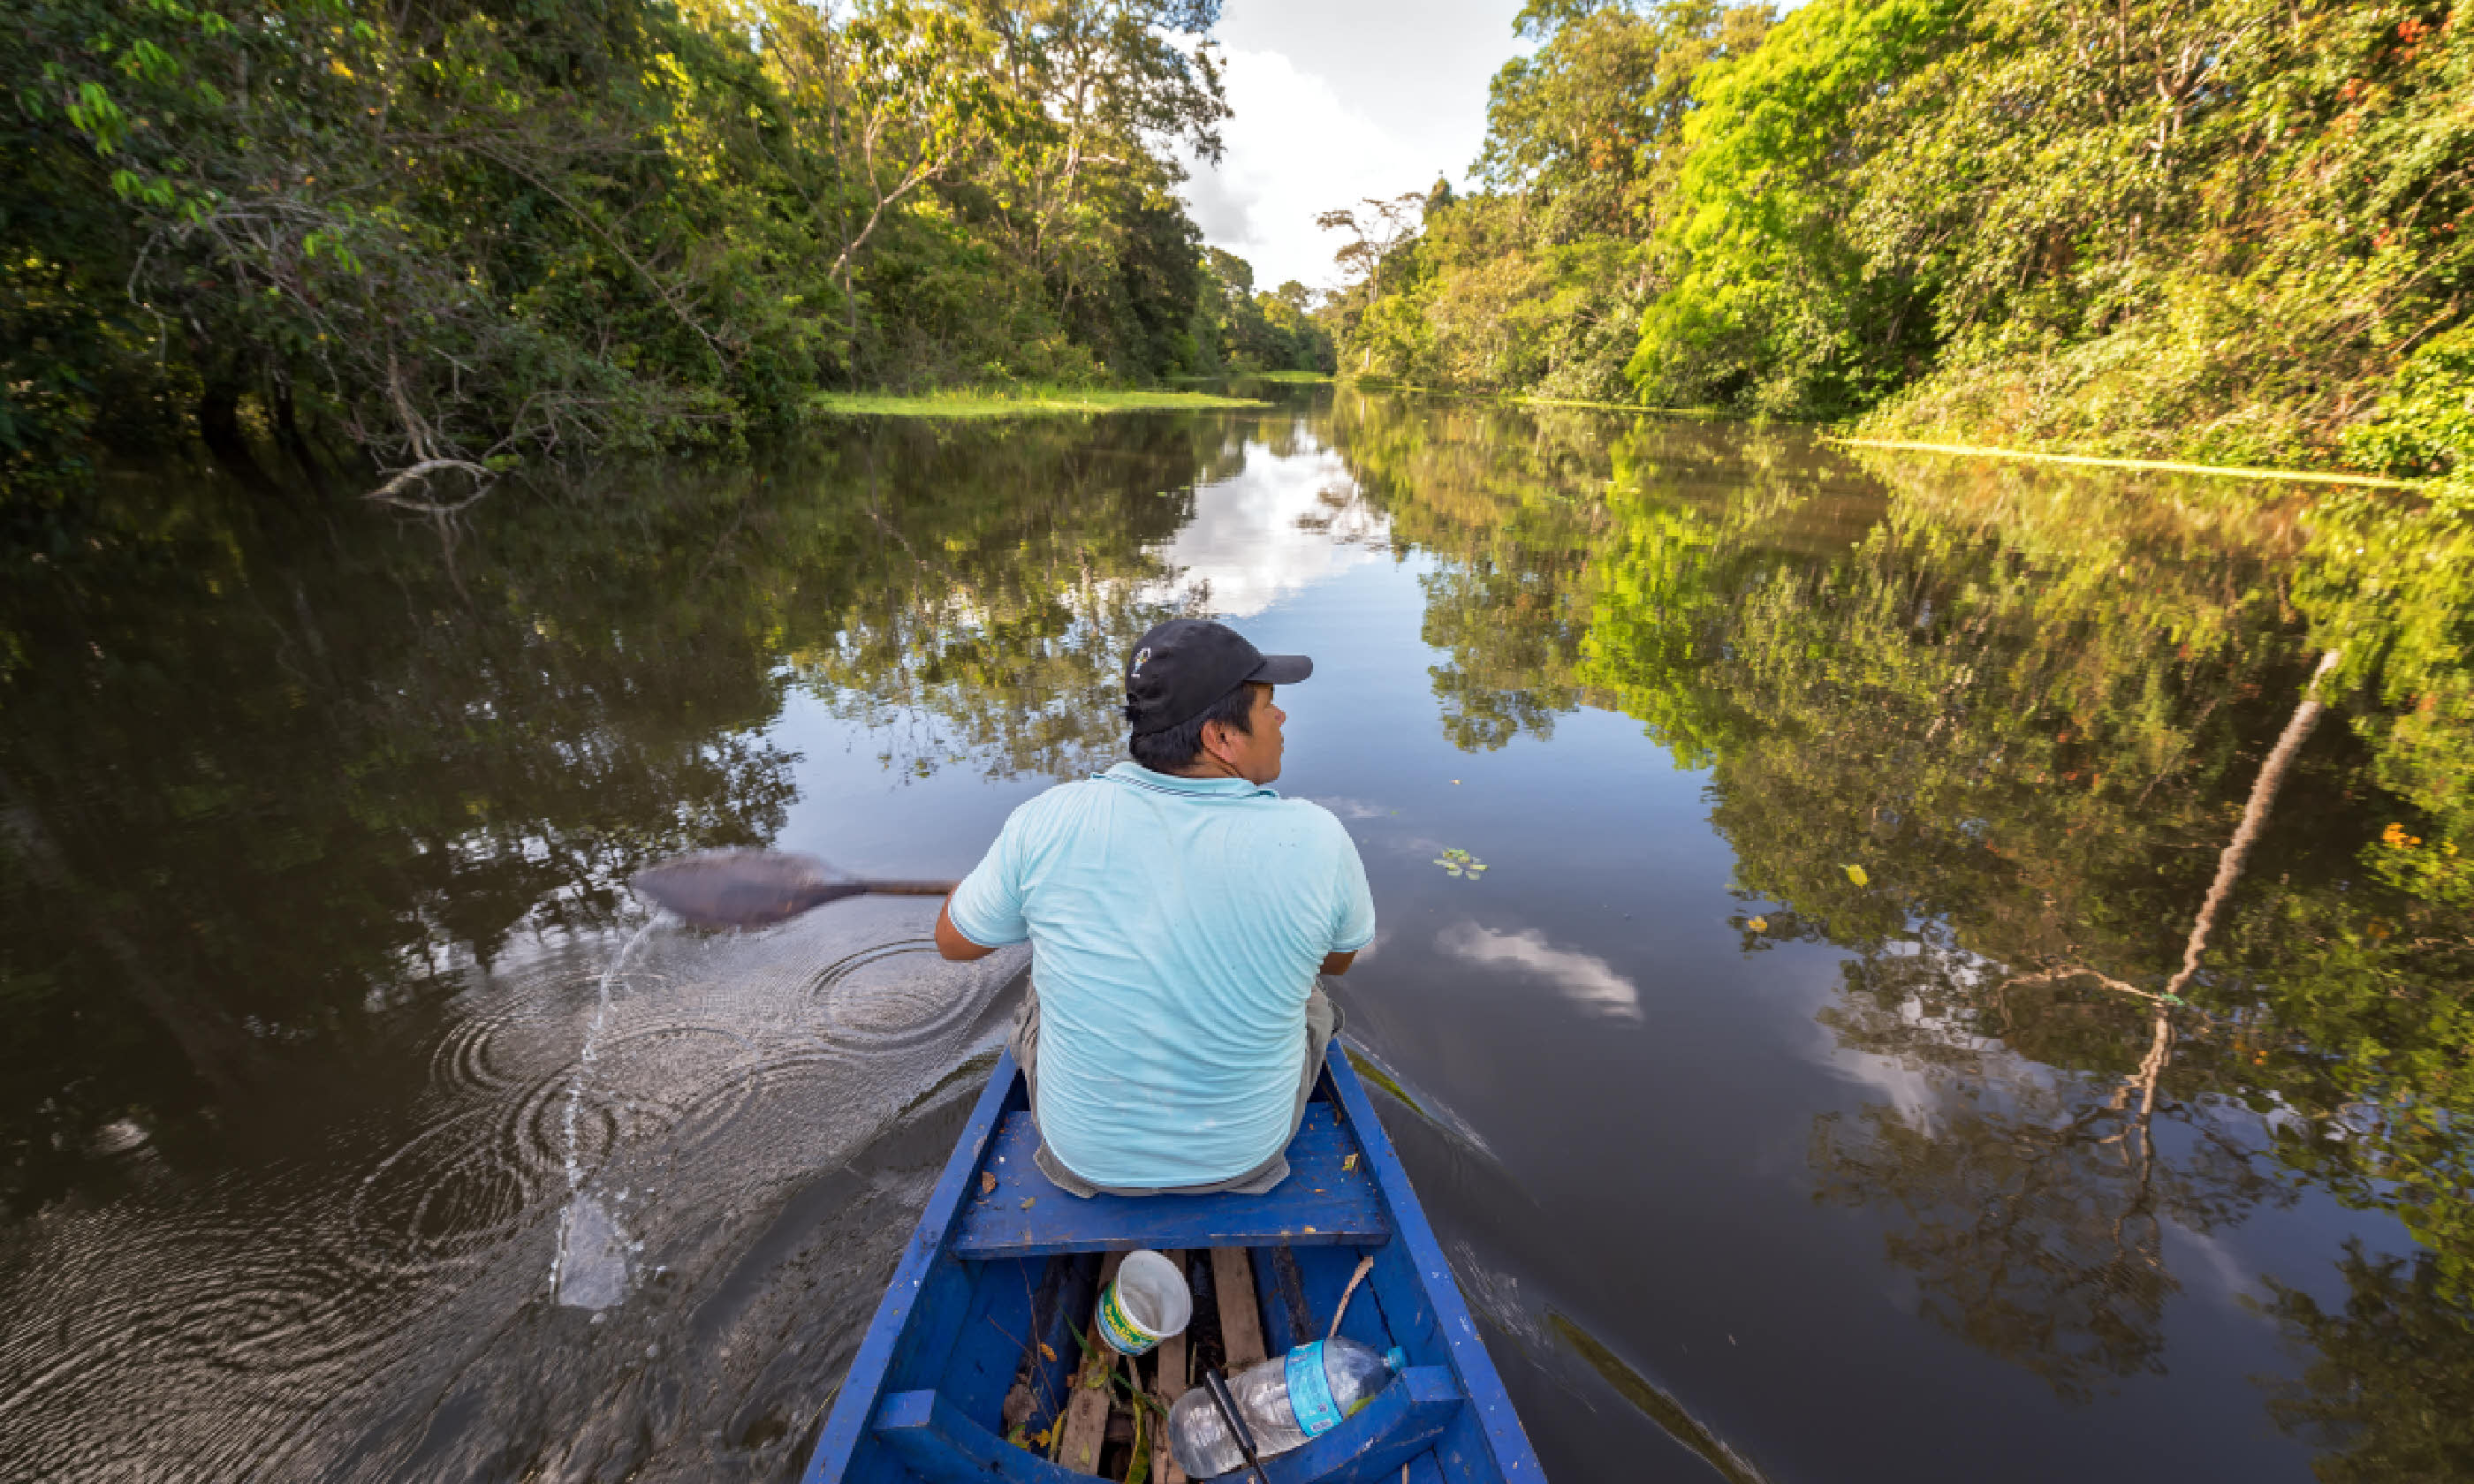 Iquitos, Peru (Shutterstock)